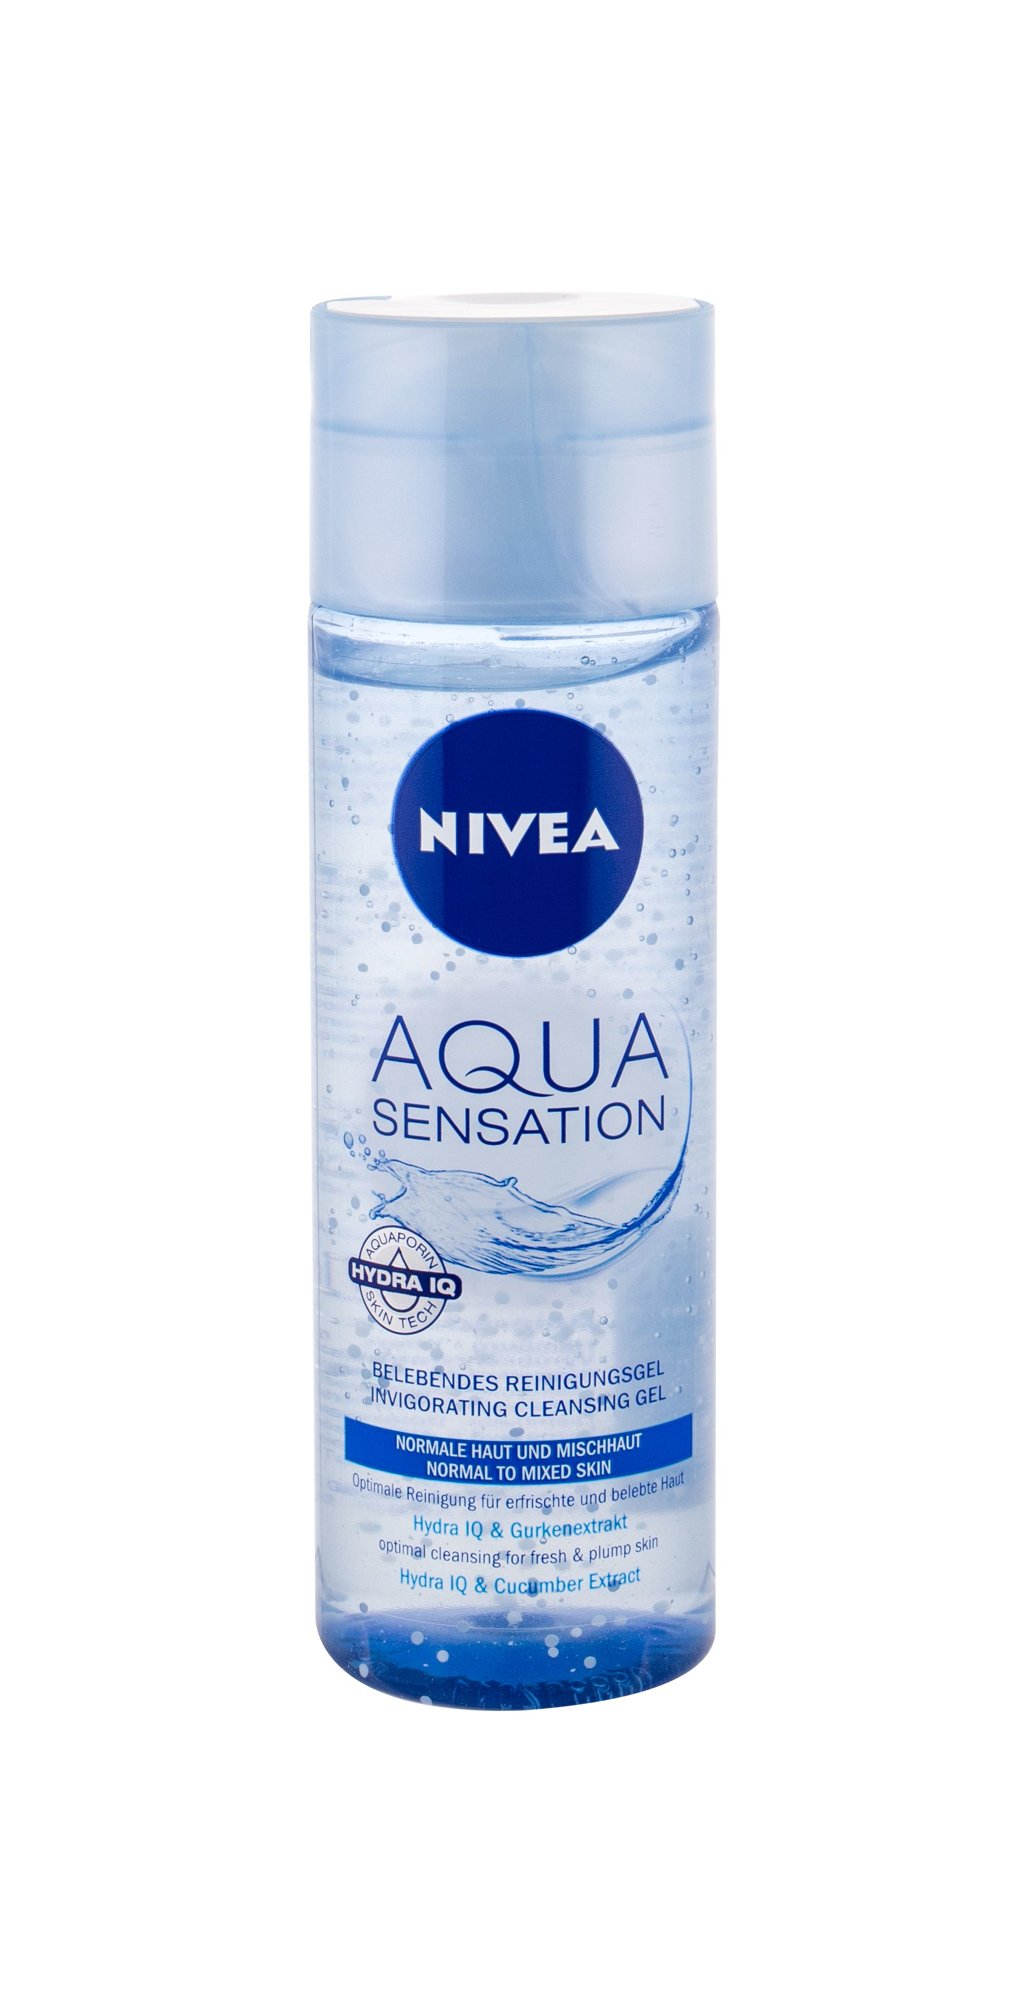 Nivea Aqua Sensation veido gelis